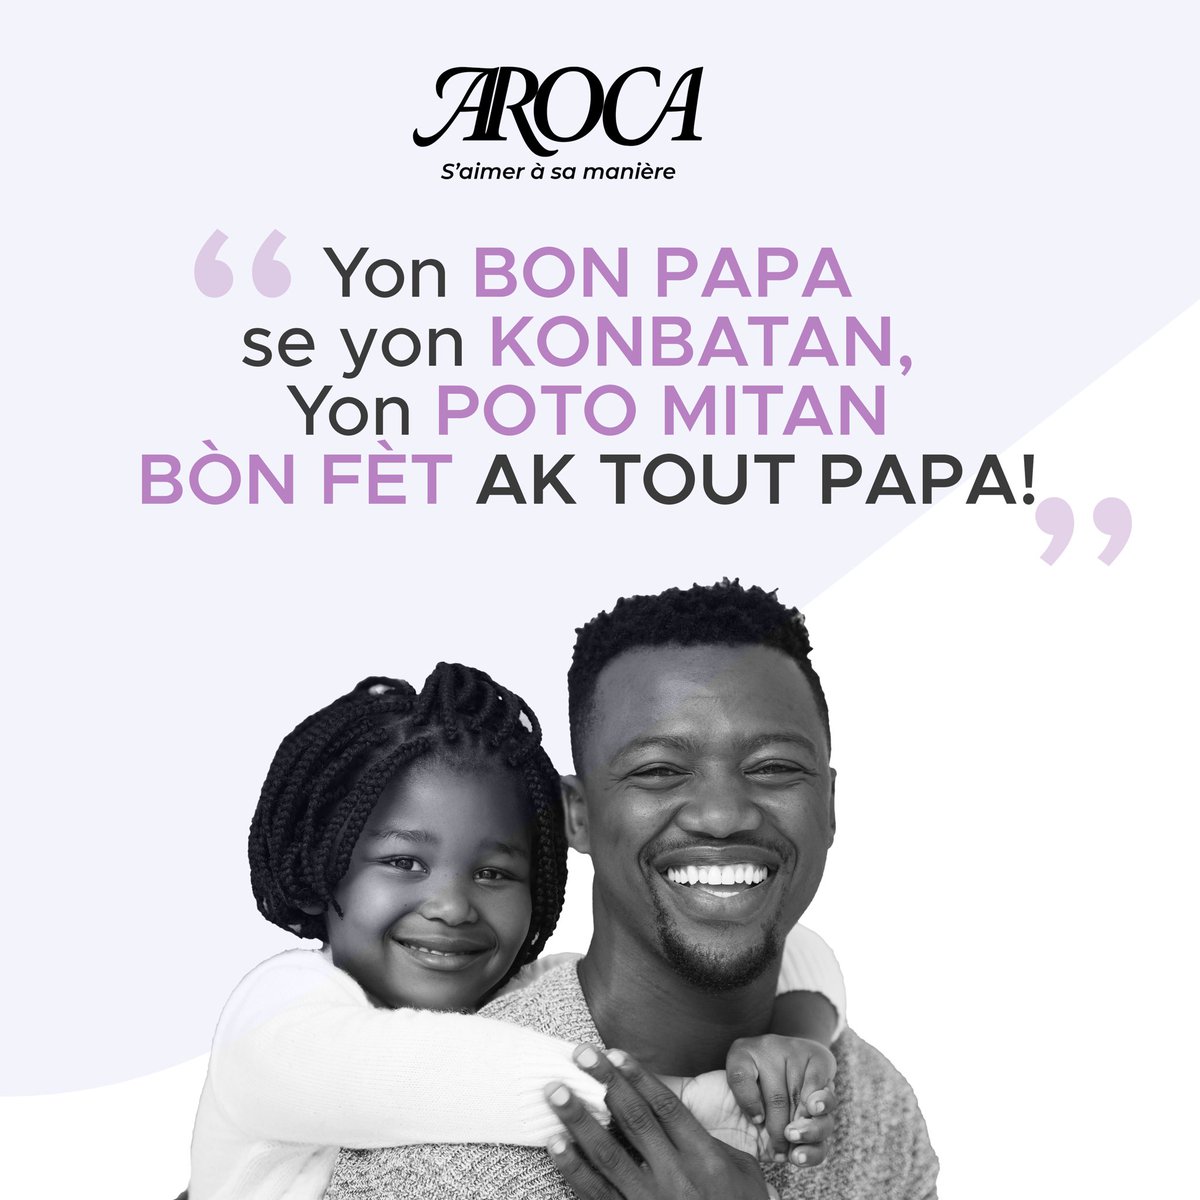 Yon bon papa se yon KONBATAN, yon POTOMITAN
BÒN FÈT AK TOUT PAPA ❤️ 💐 

#father #fathersday #père #fêtedespères #fetedesperes #bonnefêtedespères #family #fatherlove #bònfètpapa #fètpapa